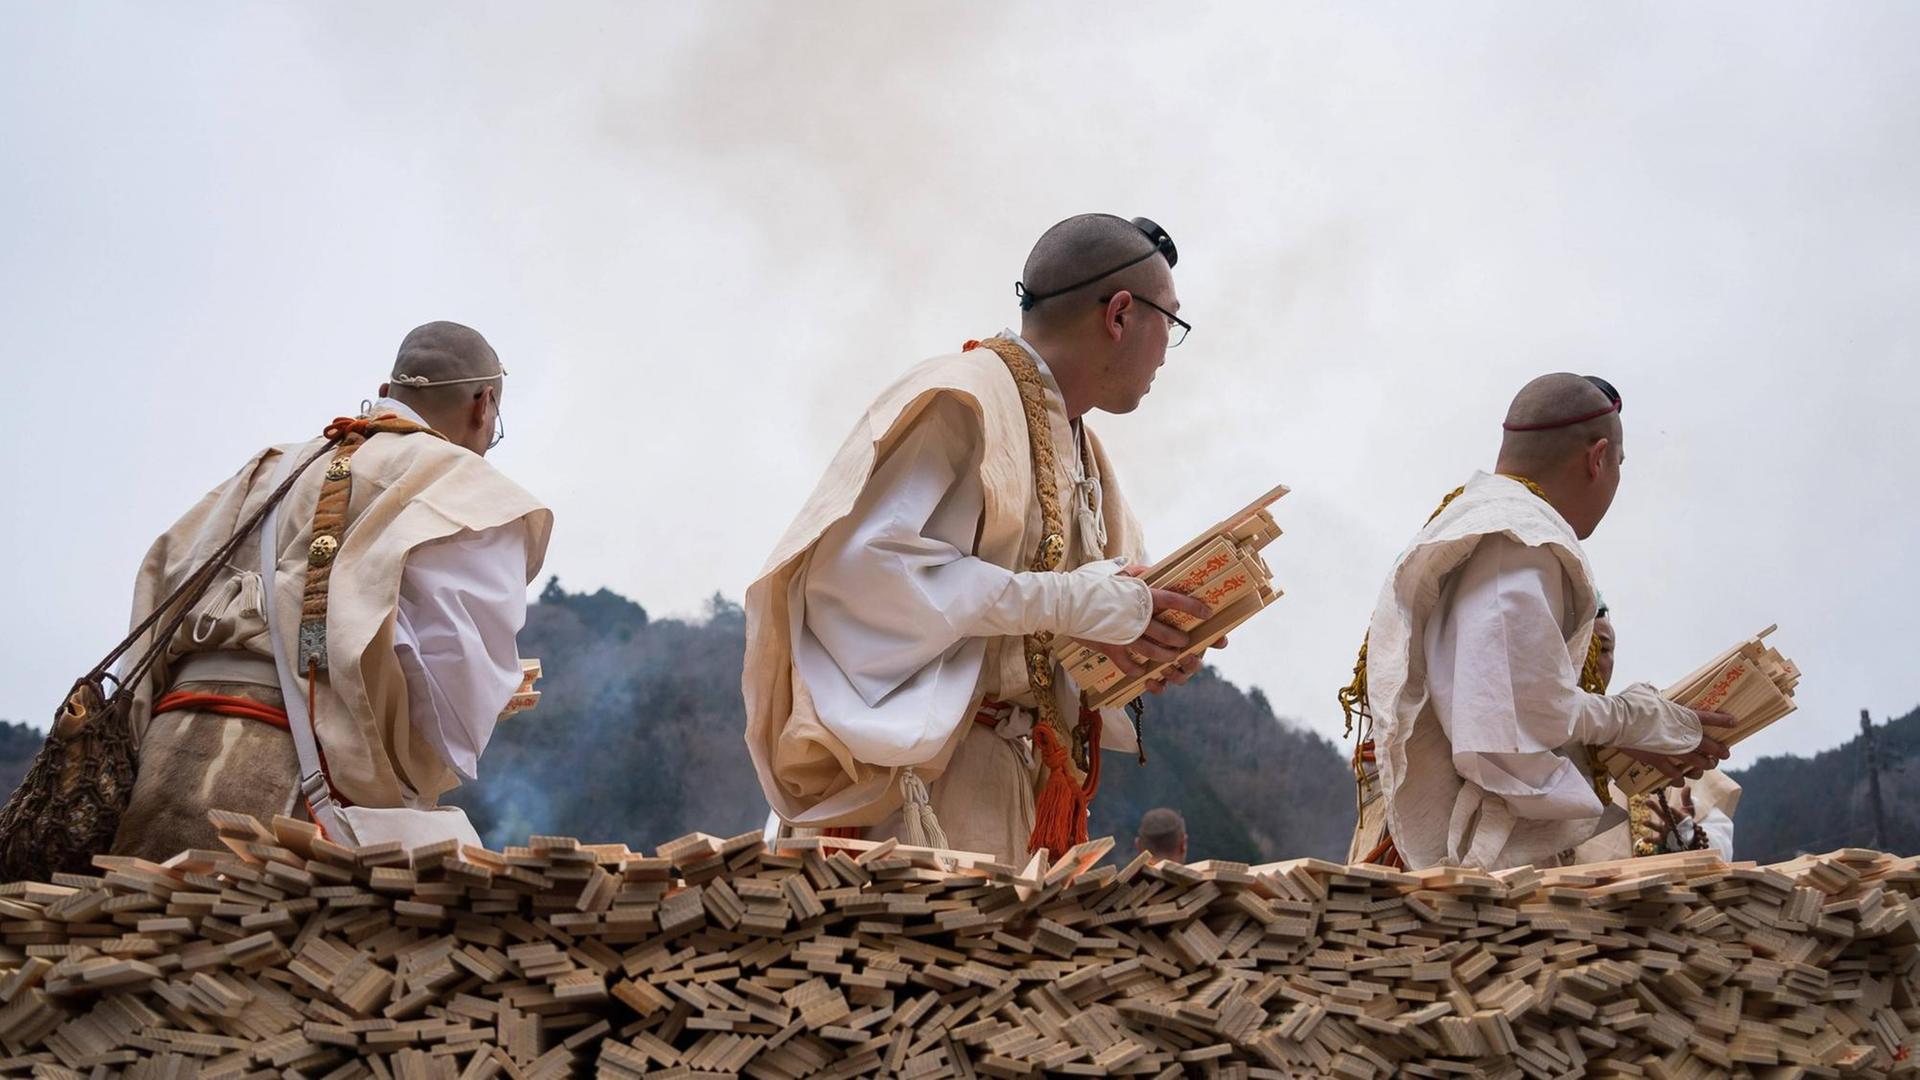 Yamabushi Mönche mit Holzstücken in den Händen, während einer Feuerzeremonie, die das Kommen des Frühlings im Yakuoin-Tempel auf dem Berg ankündigt, Mai 2019.